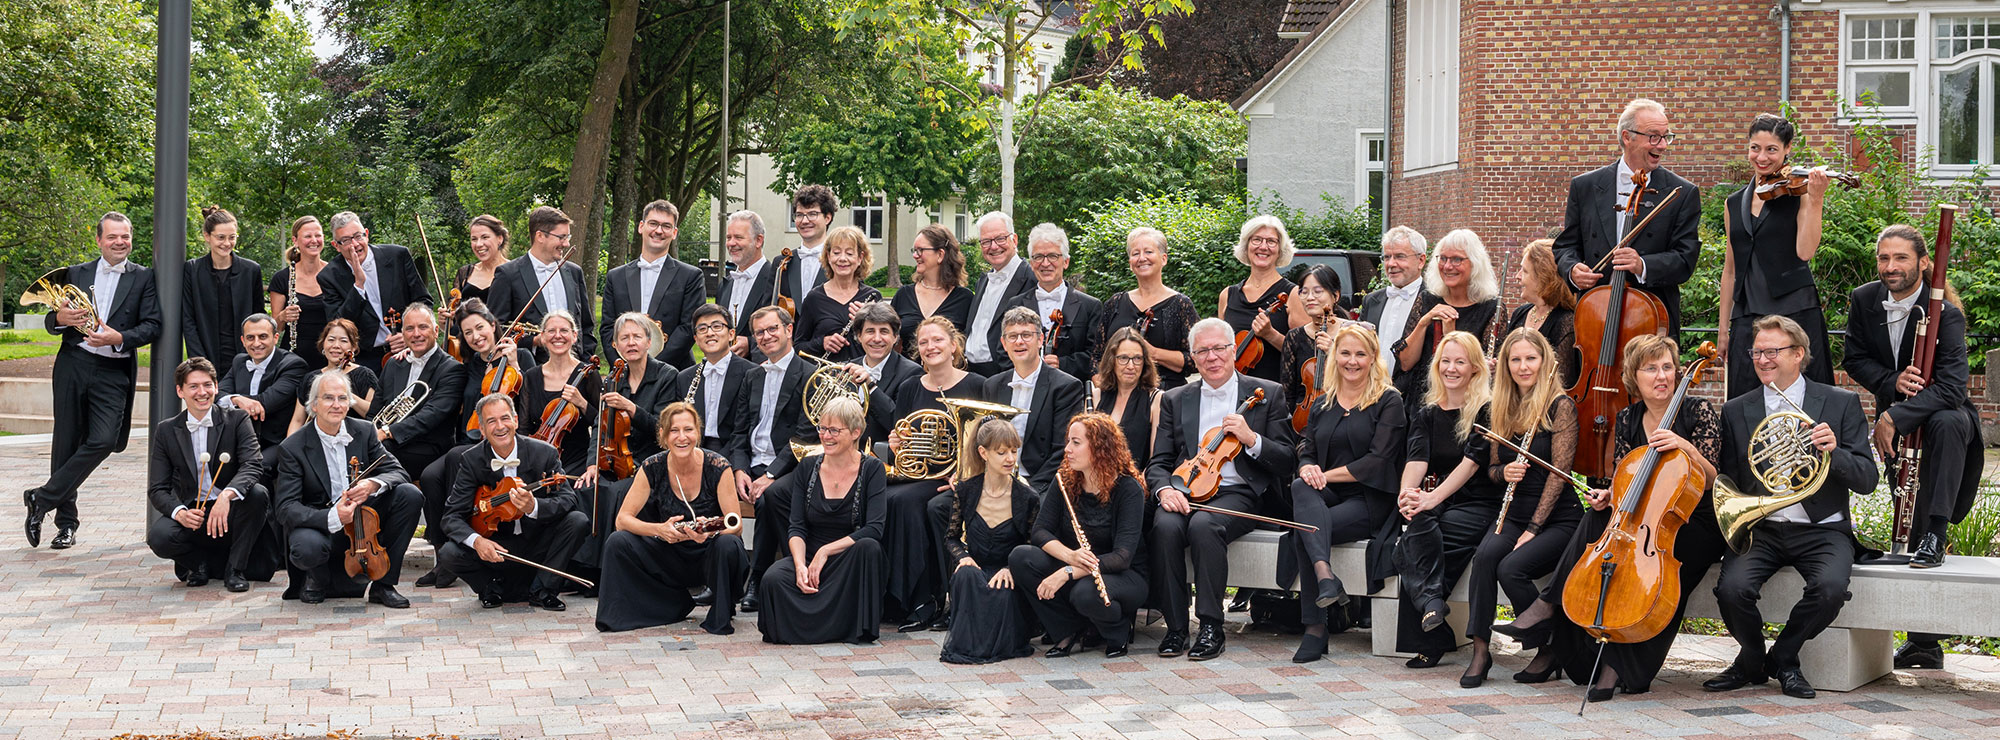 Das Schleswig-Holsteinische Sinfonieorchester, draußen, in schwarzer Kleidung, mit den Instrumenten